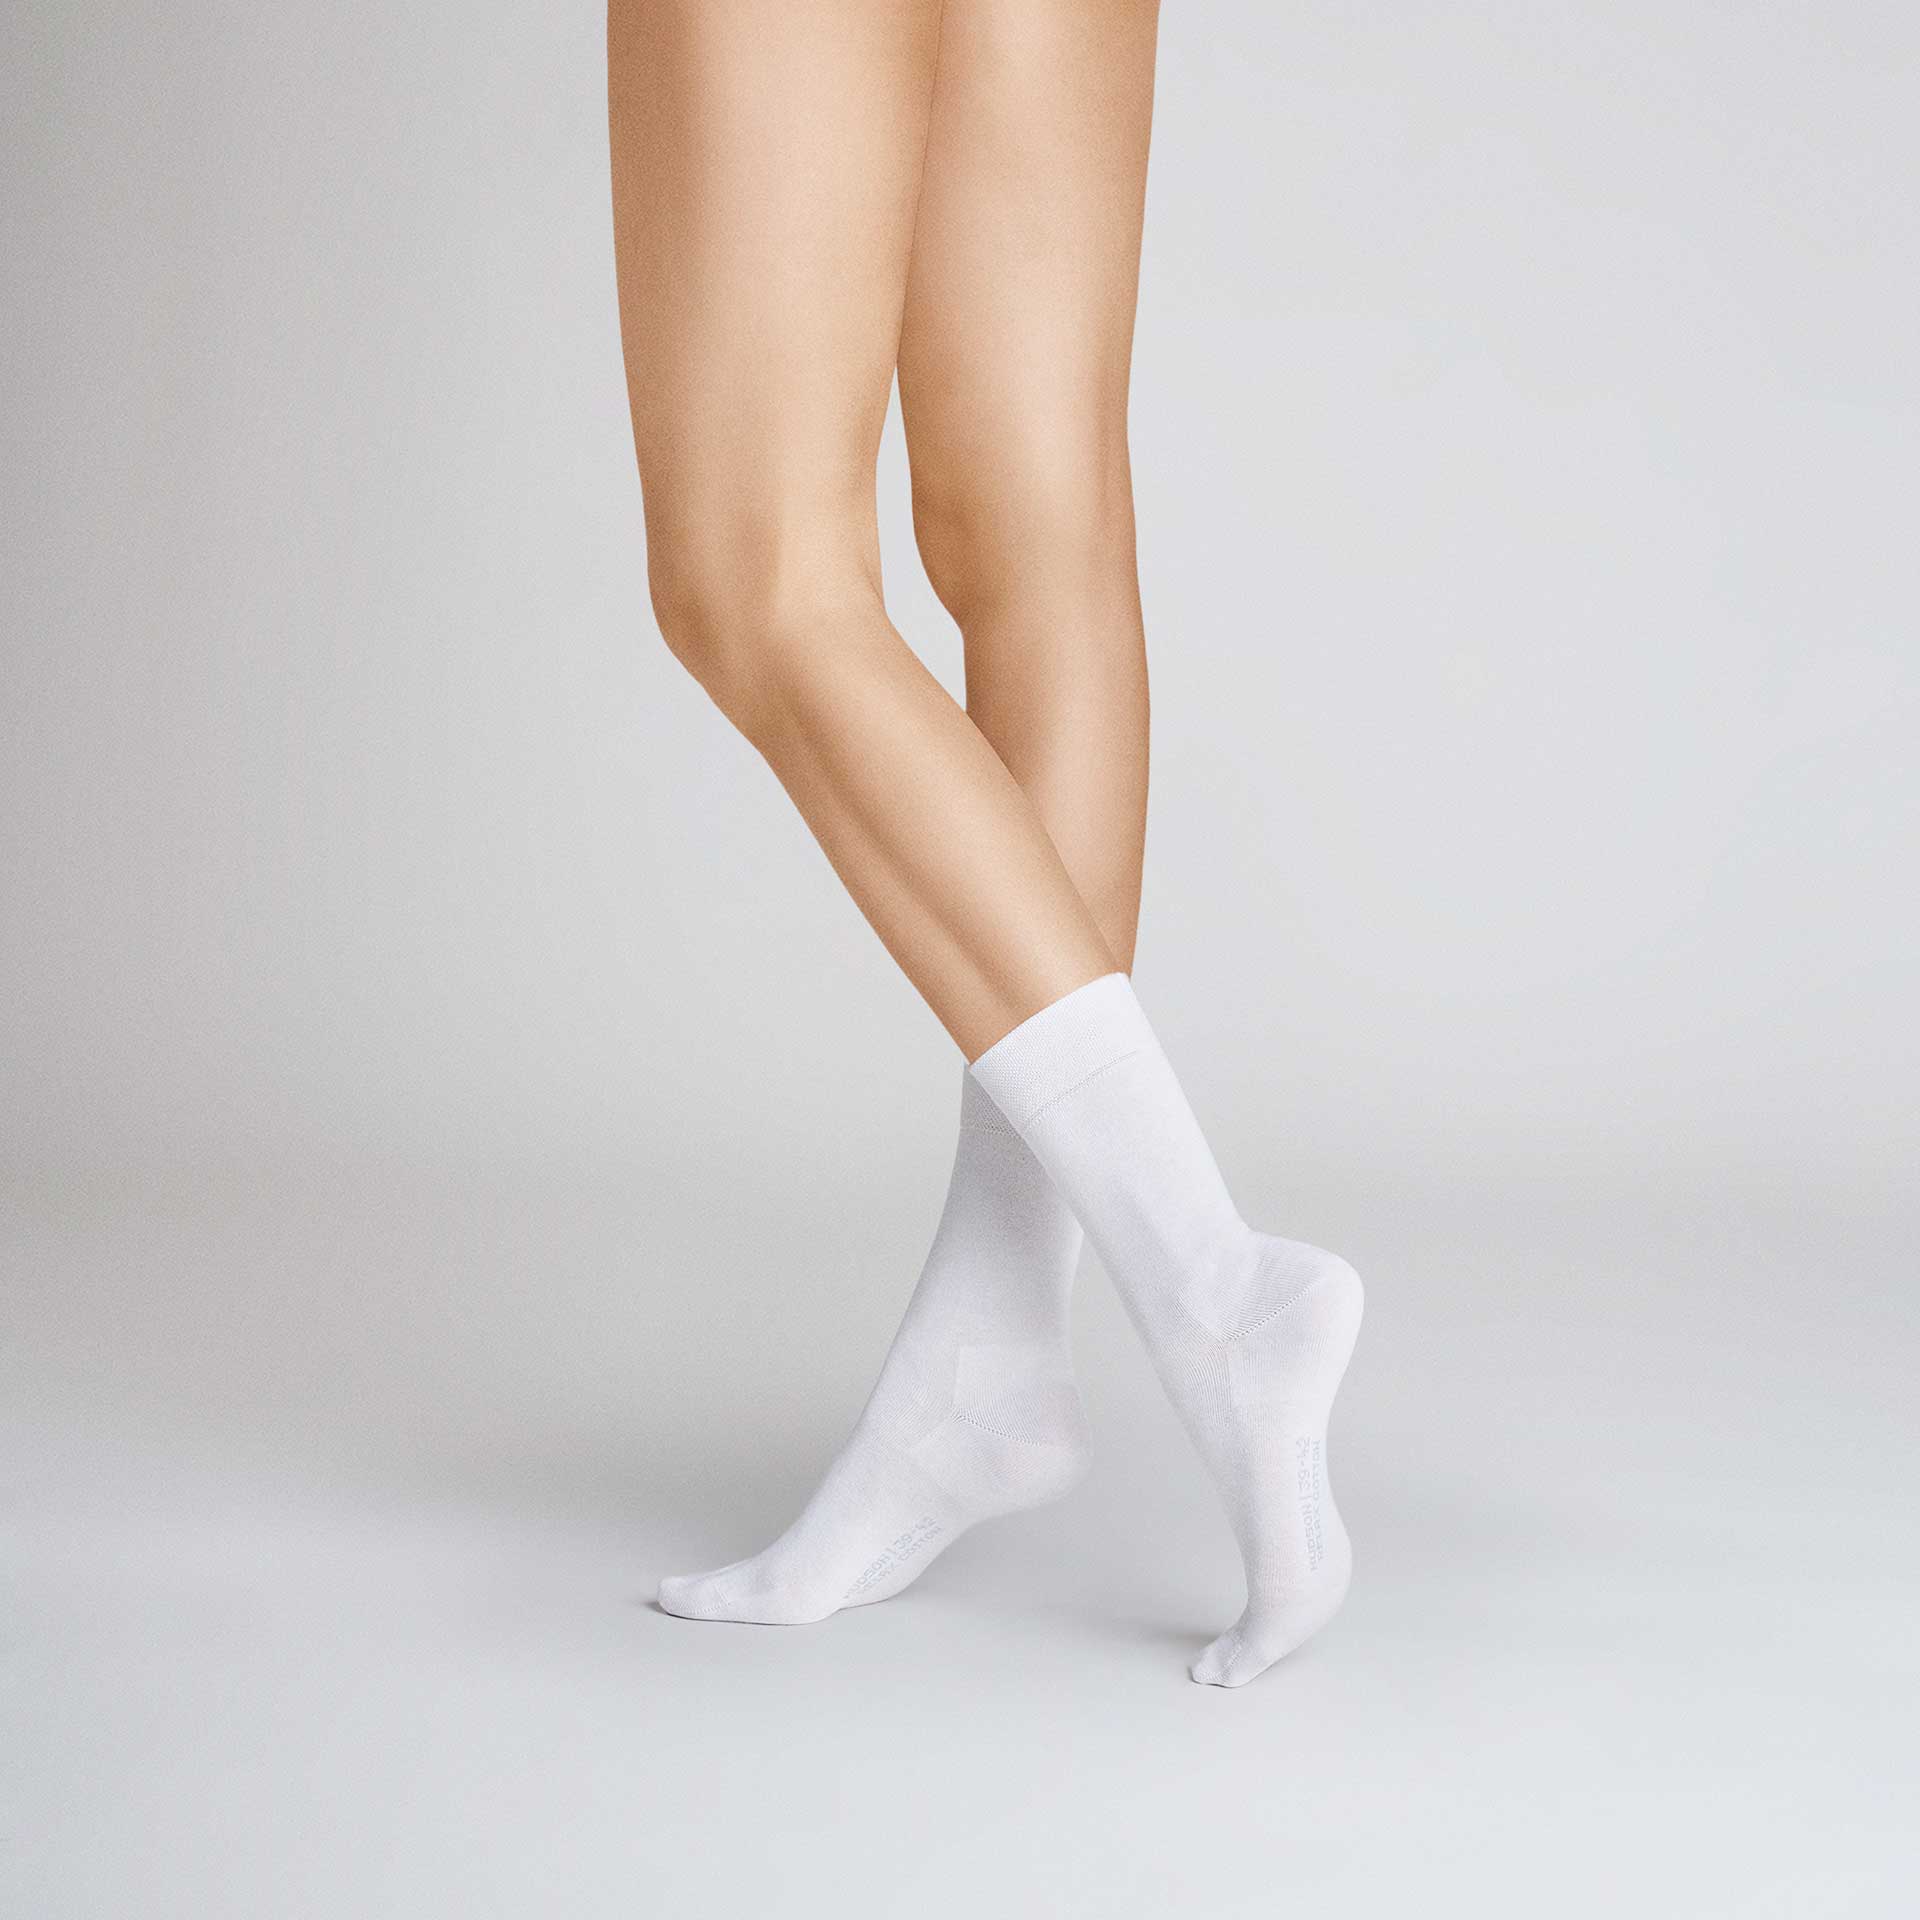 HUDSON Damen RELAX COTTON     -  39/42 - Socken aus 97% Baumwolle - White (Weiß)